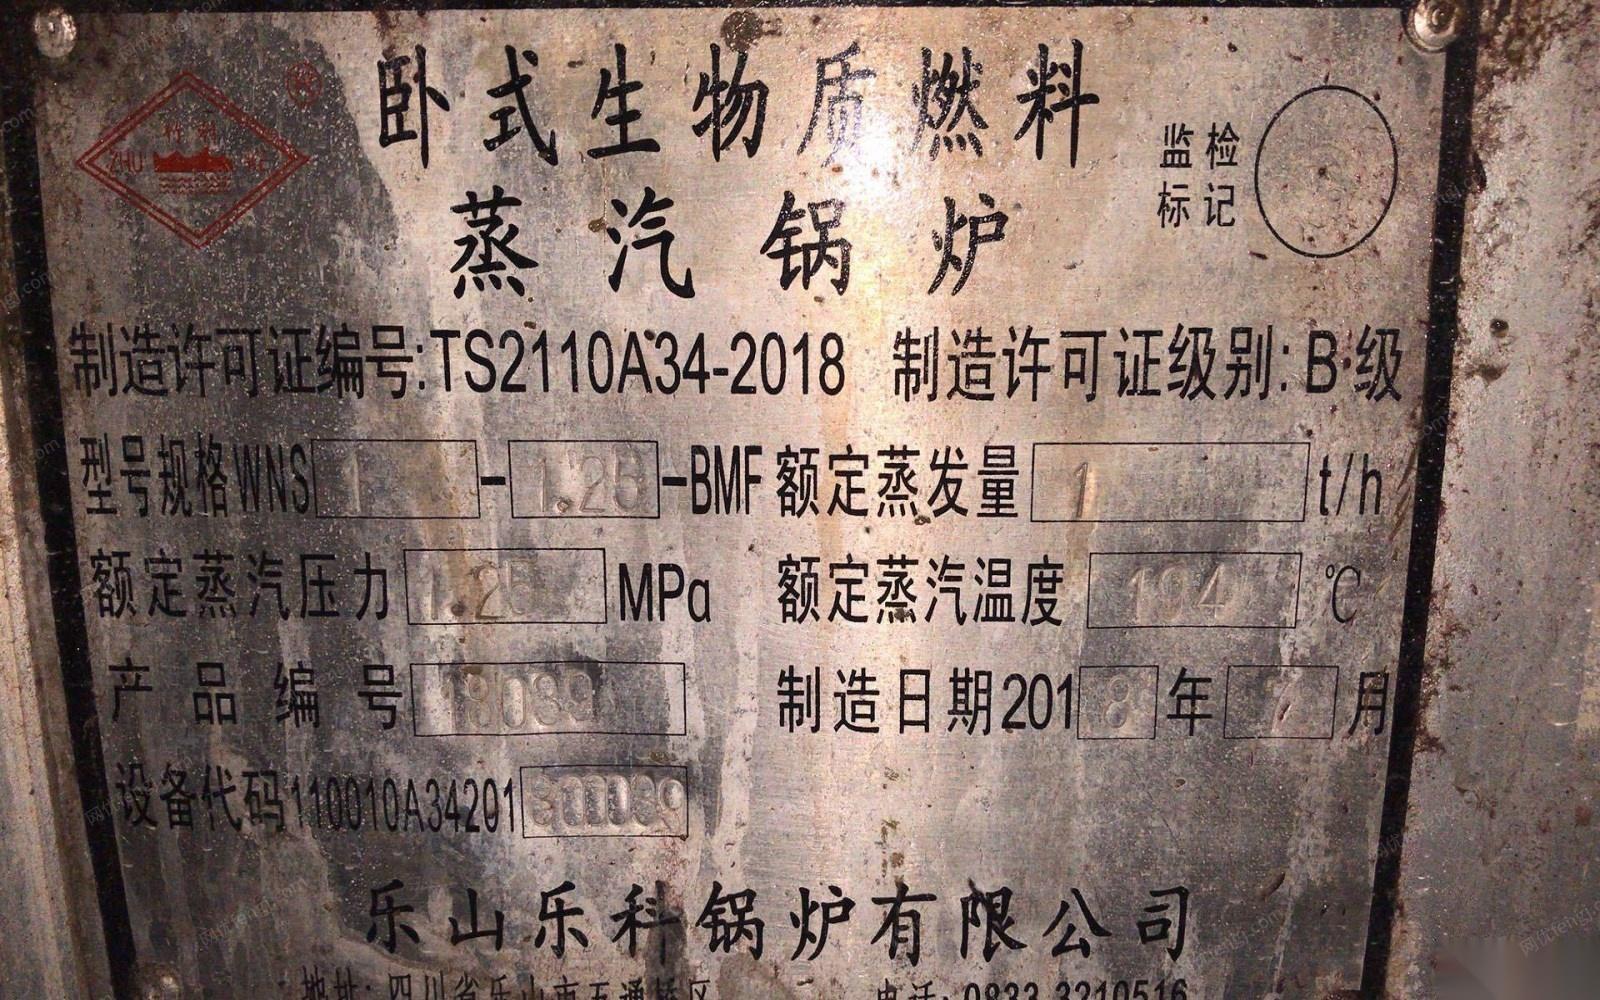 重庆南岸区18年卧式生物质燃料蒸汽锅炉一台 50000元出售.另有洗水机1台600磅2台300磅 .200磅烘干机5台